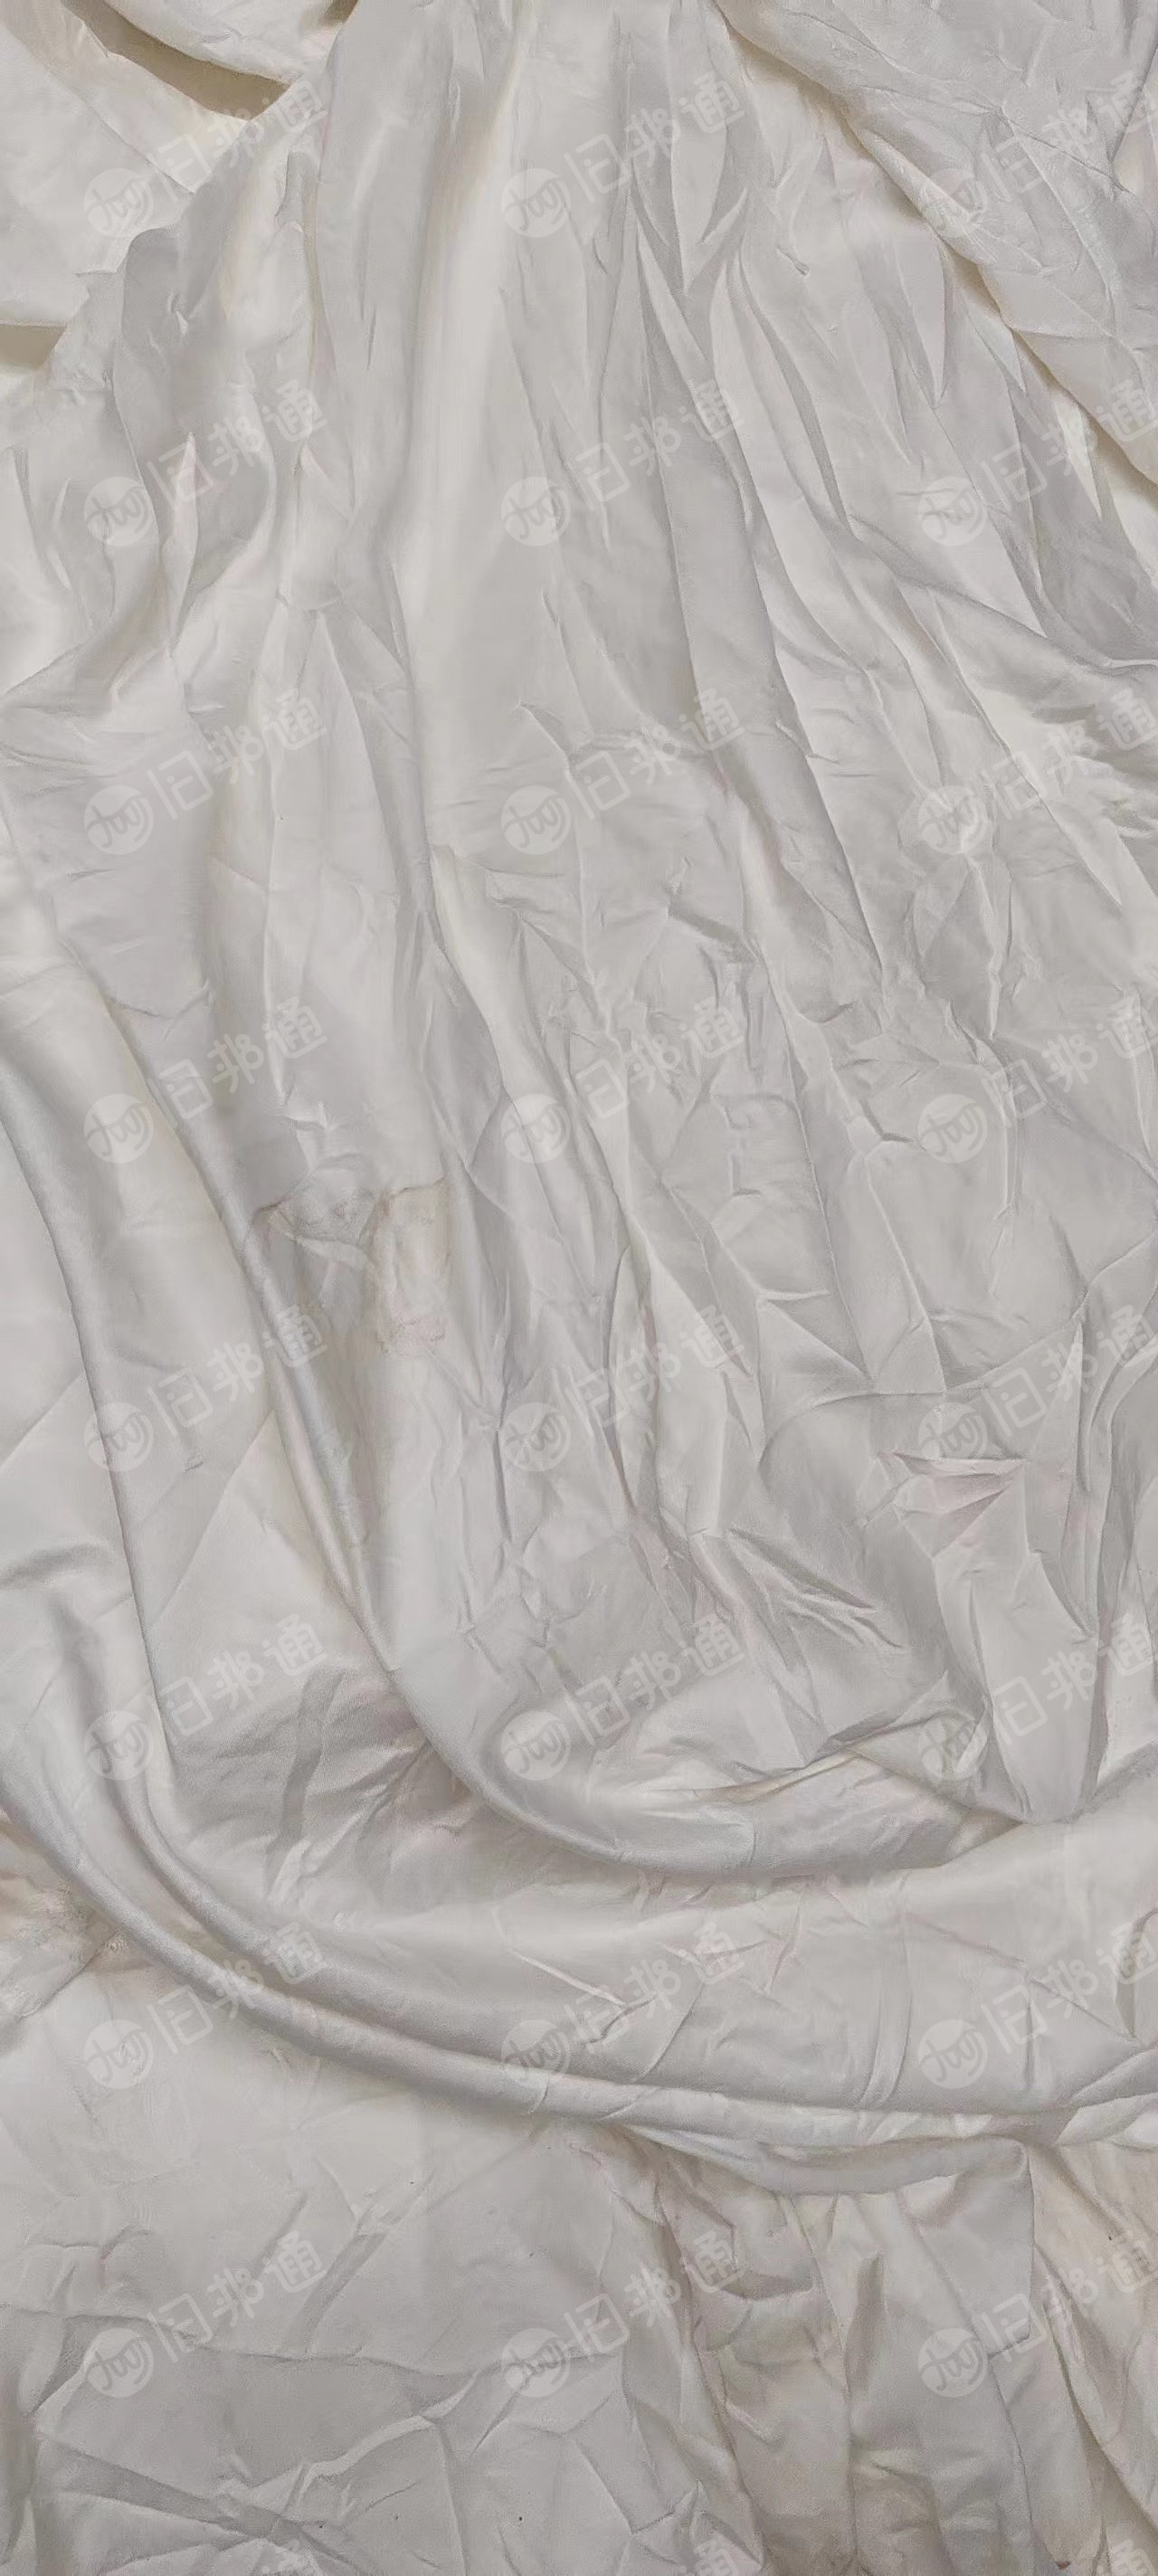 涤纶废布，白色大布块，杂色布块，涤纶废布，化纤布，出售